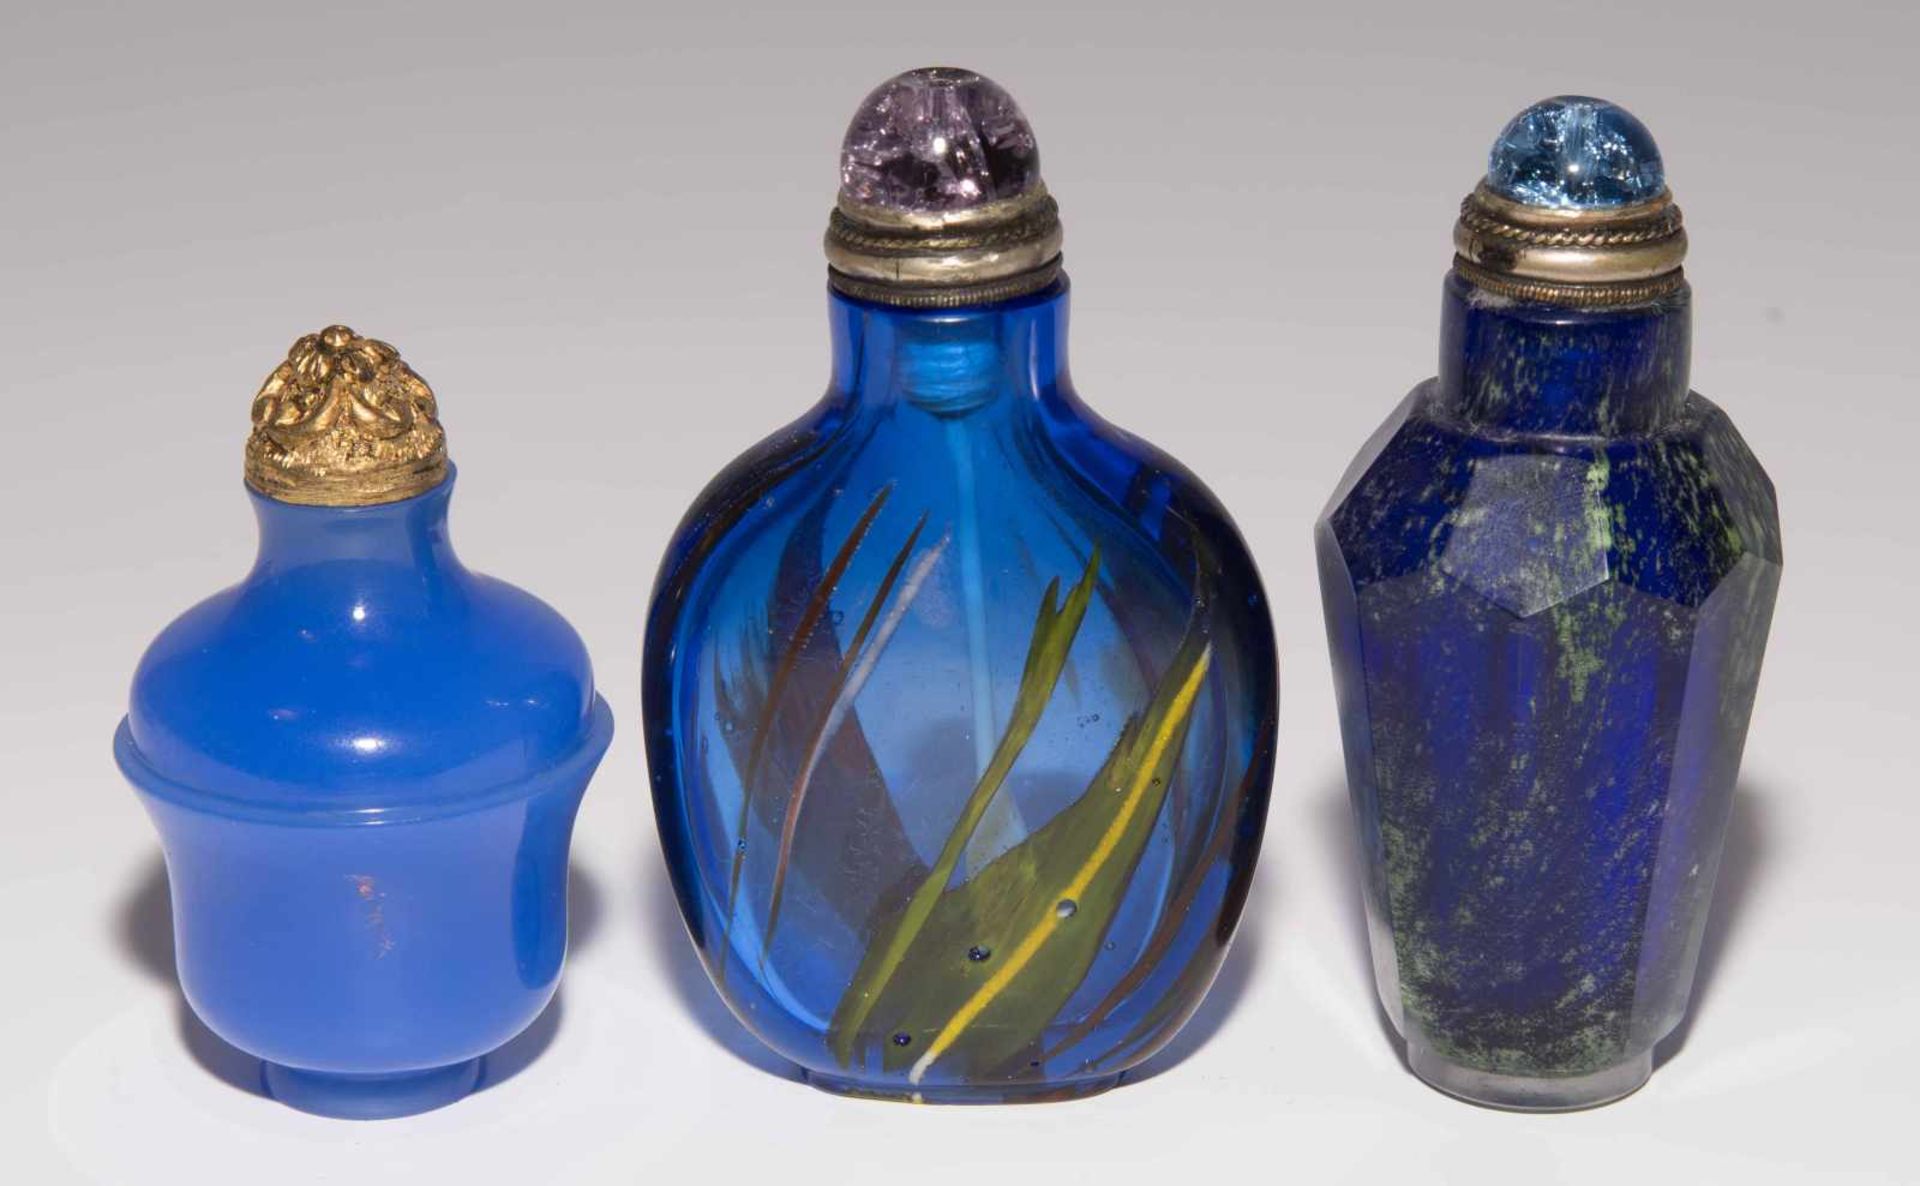 6 Glas Snuff BottlesChina. Opakes und transparentes Glas in verschiedenen Blautönen tlw. bunt - Image 9 of 15